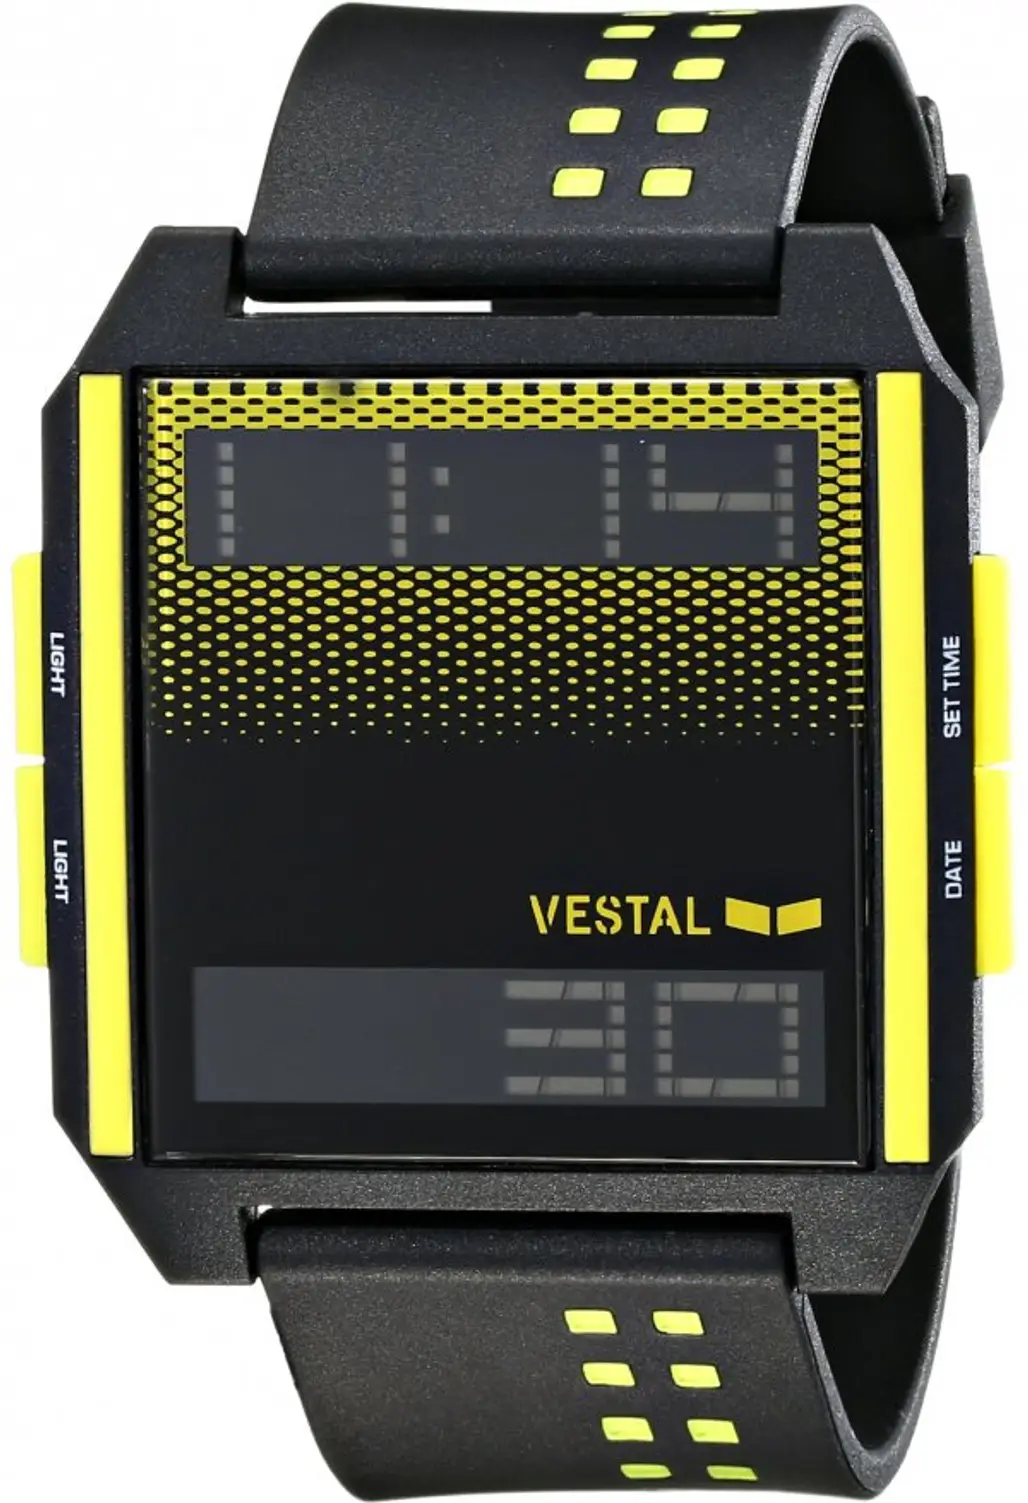 Vestal, watch, communication device, technology, hand,